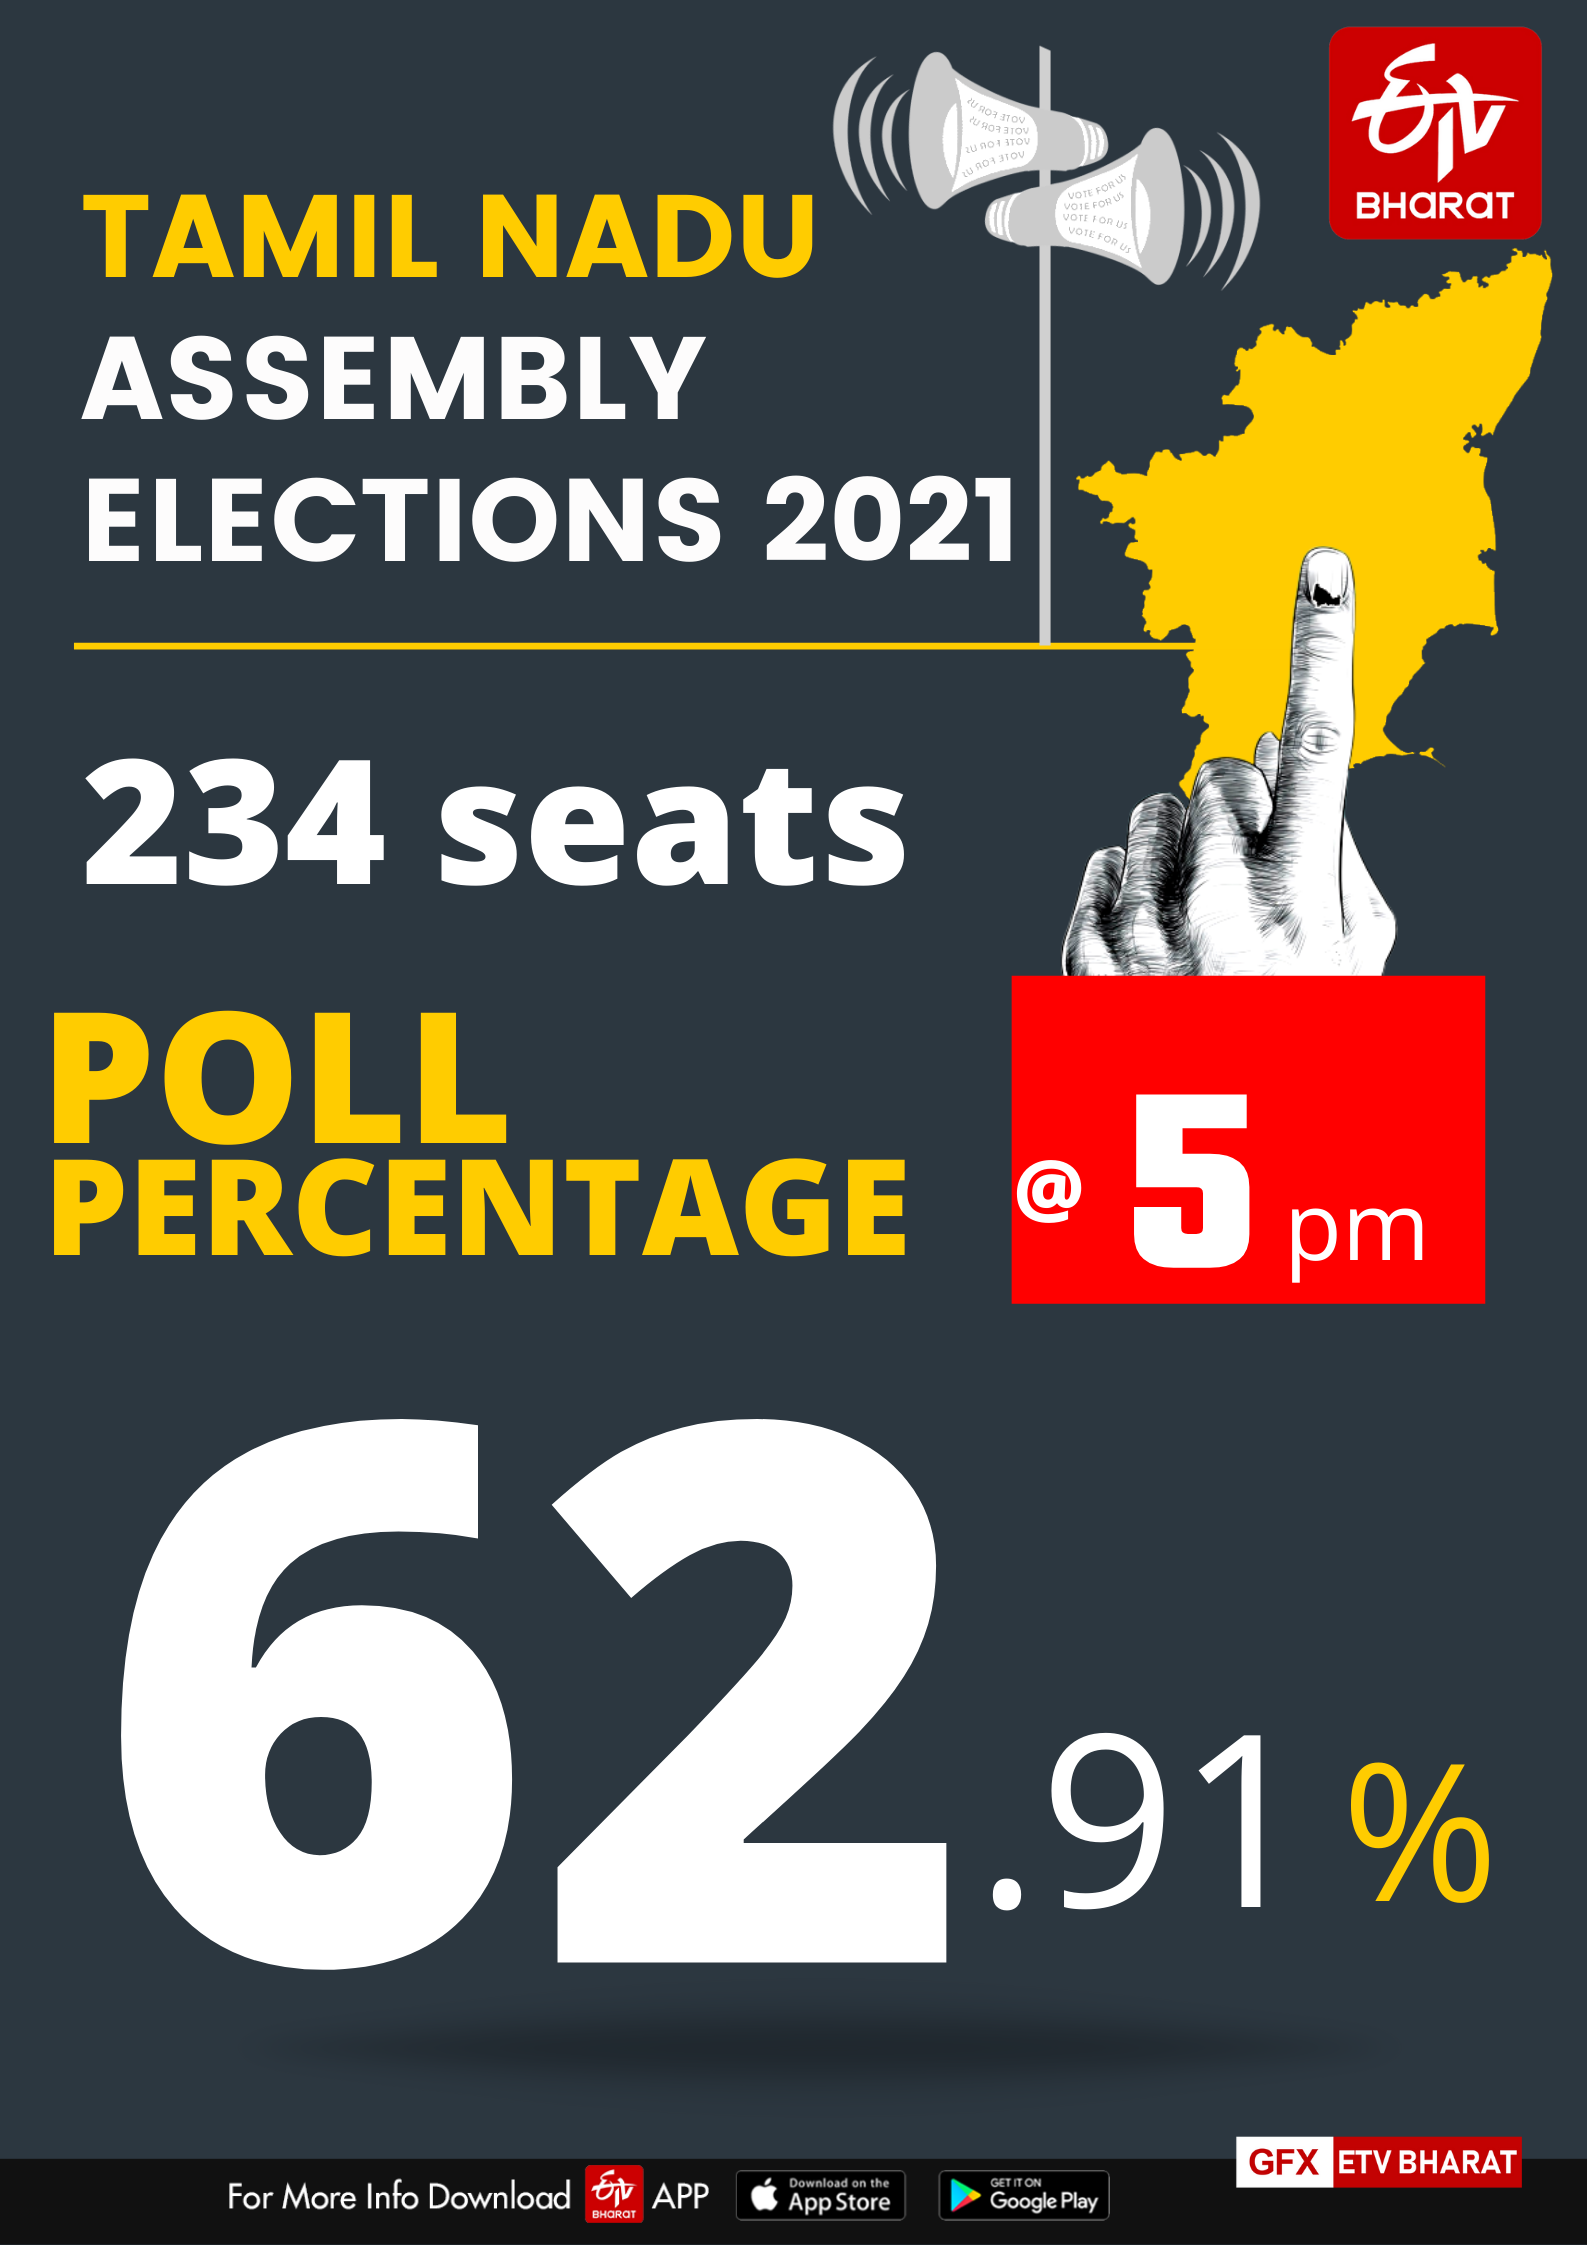 Tamil Nadu registered a voter turnout of 62.91 per cent till 5 pm